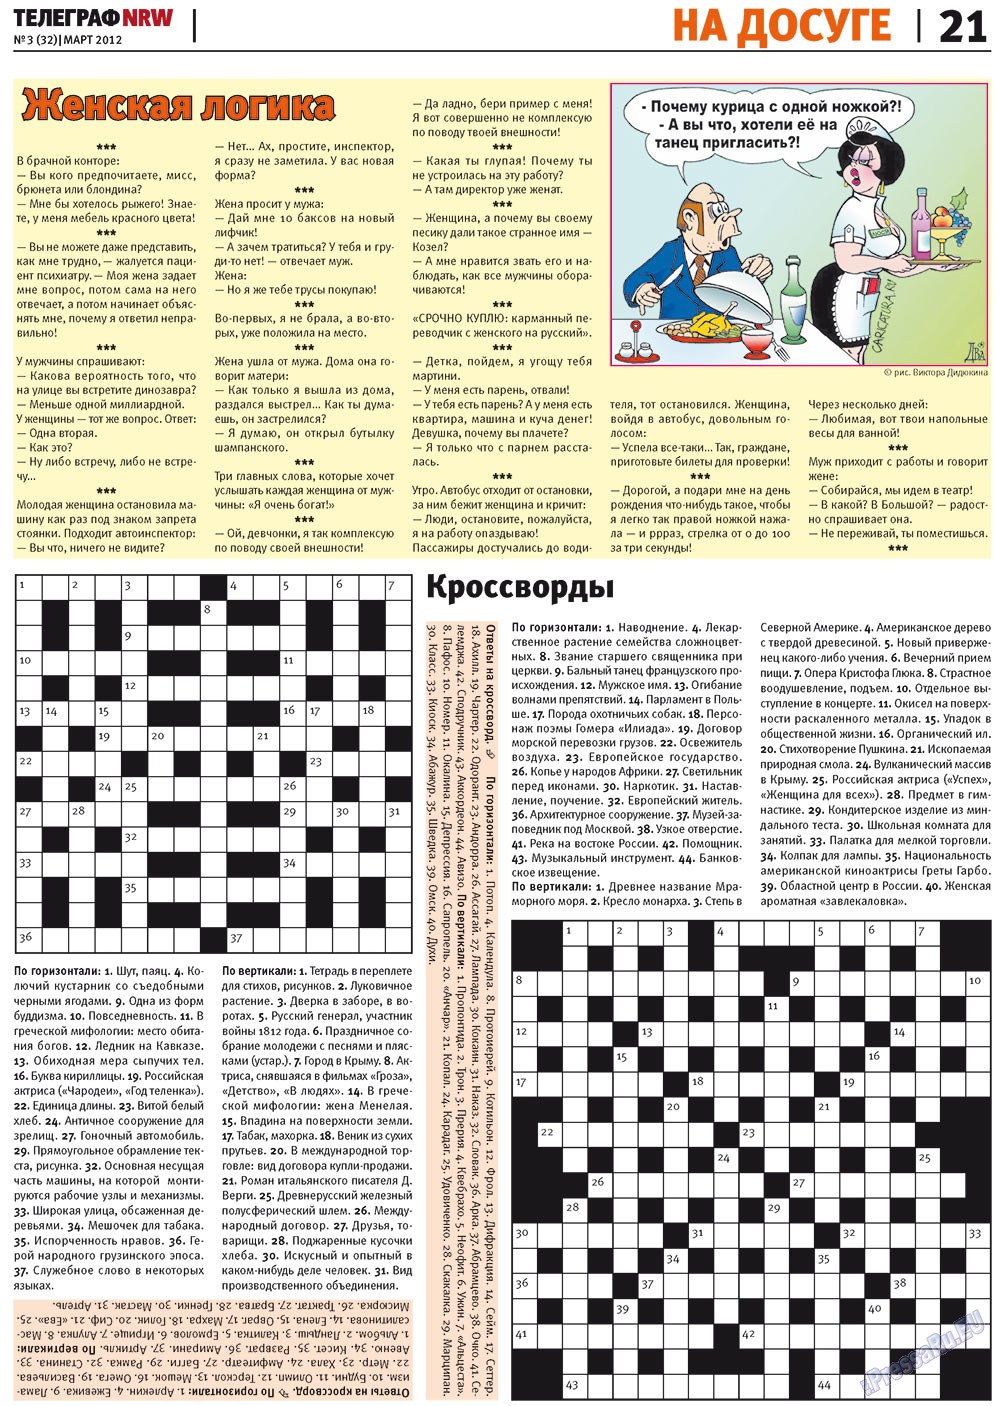 Телеграф NRW (газета). 2012 год, номер 3, стр. 21